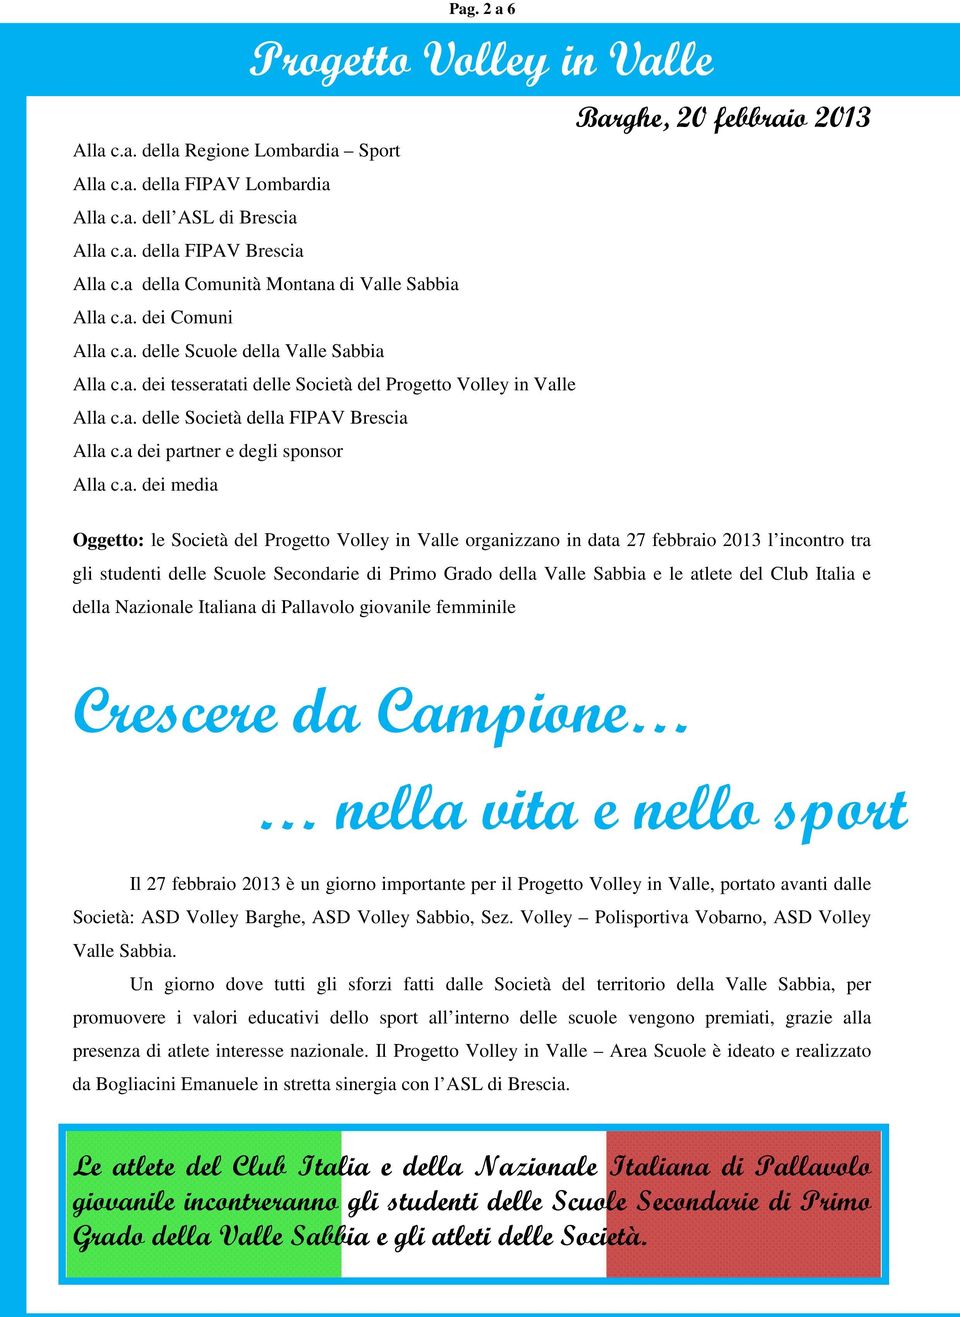 2013 Oggetto: le Società del organizzano in data 27 febbraio 2013 l incontro tra gli studenti delle Scuole Secondarie di Primo Grado della Valle Sabbia e le atlete del Club Italia e della Nazionale